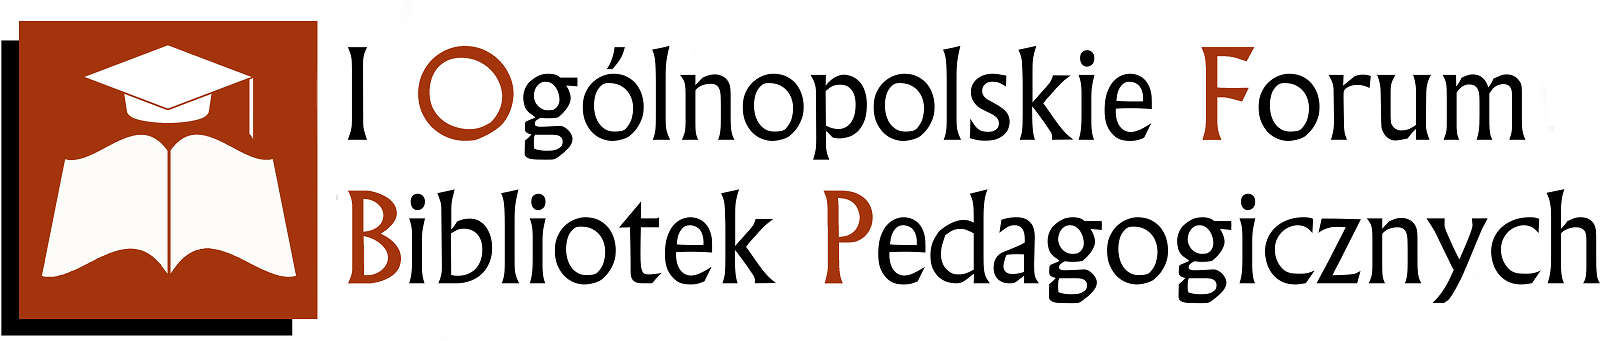 I Ogólnopolskie Forum Bibliotek Pedagogicznych